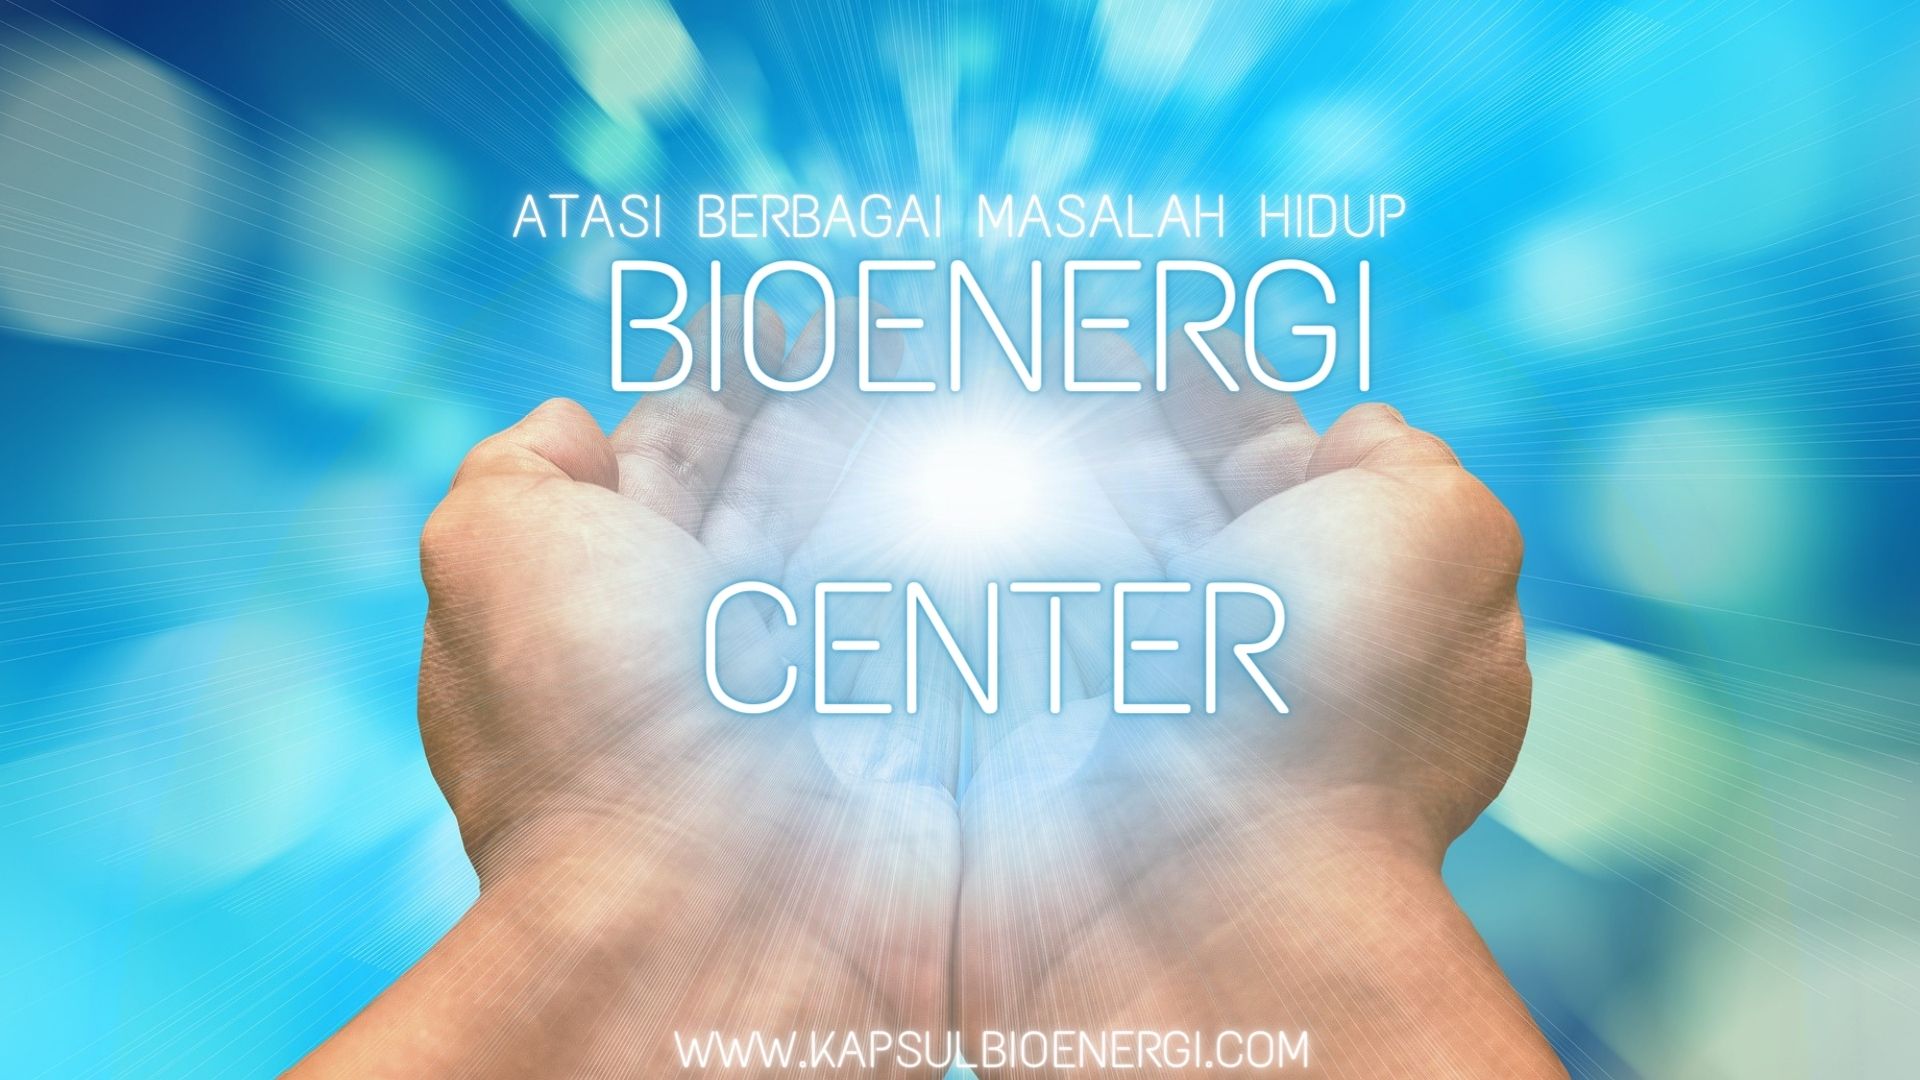 Bioenergi Center Siap Melayani